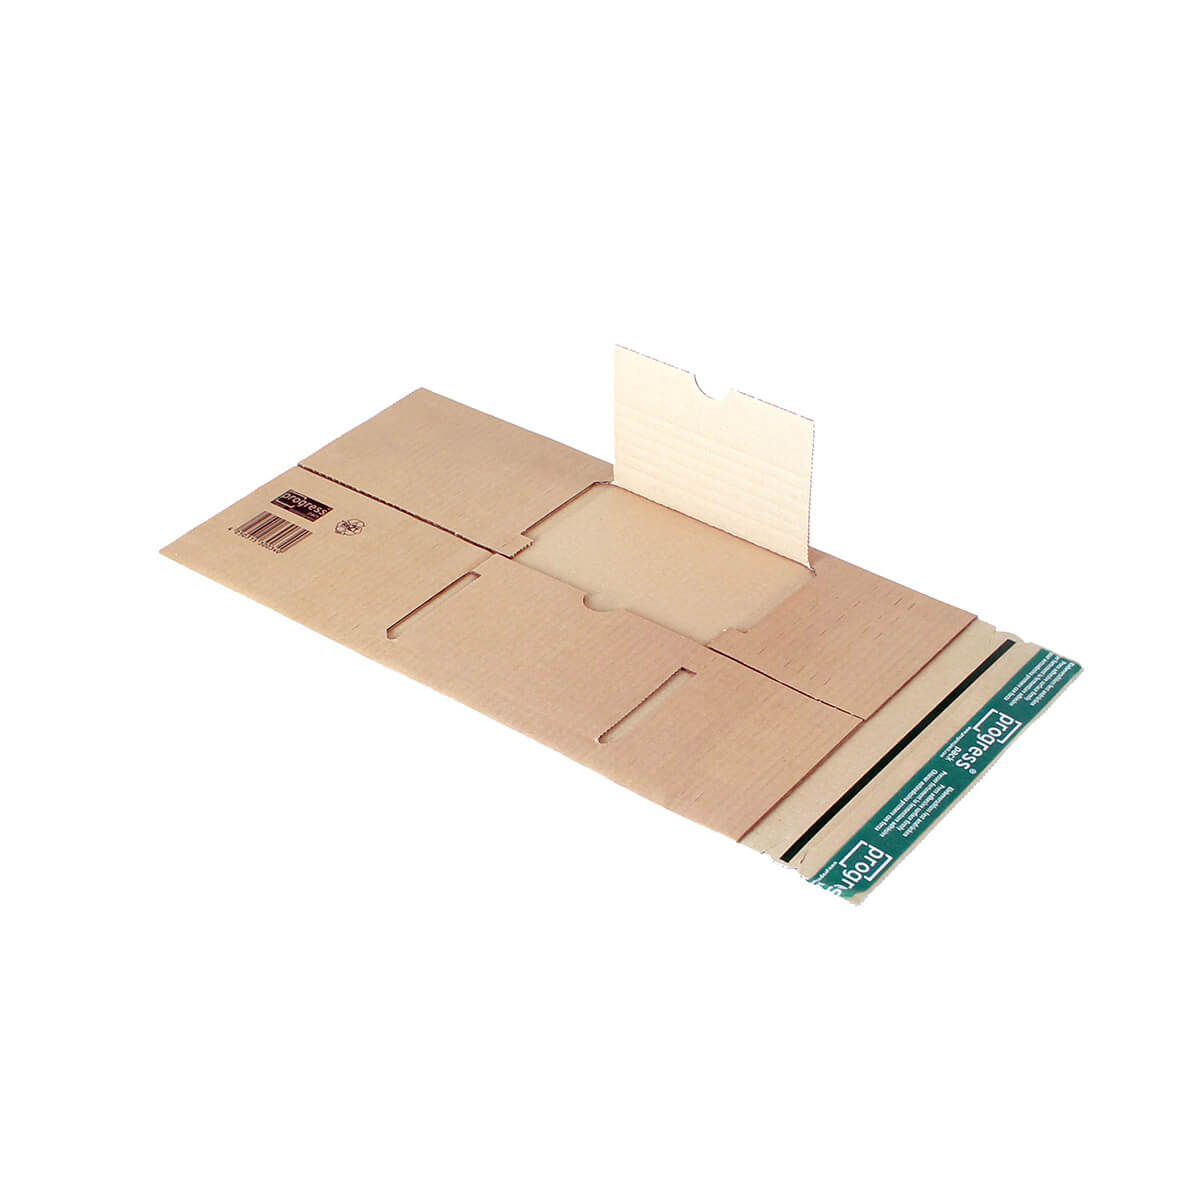 Buchverpackung 230x165x70-0 mm Pappe 2 wellig DIN A 5 selbstklebend + Aufreißfaden - progressPACK